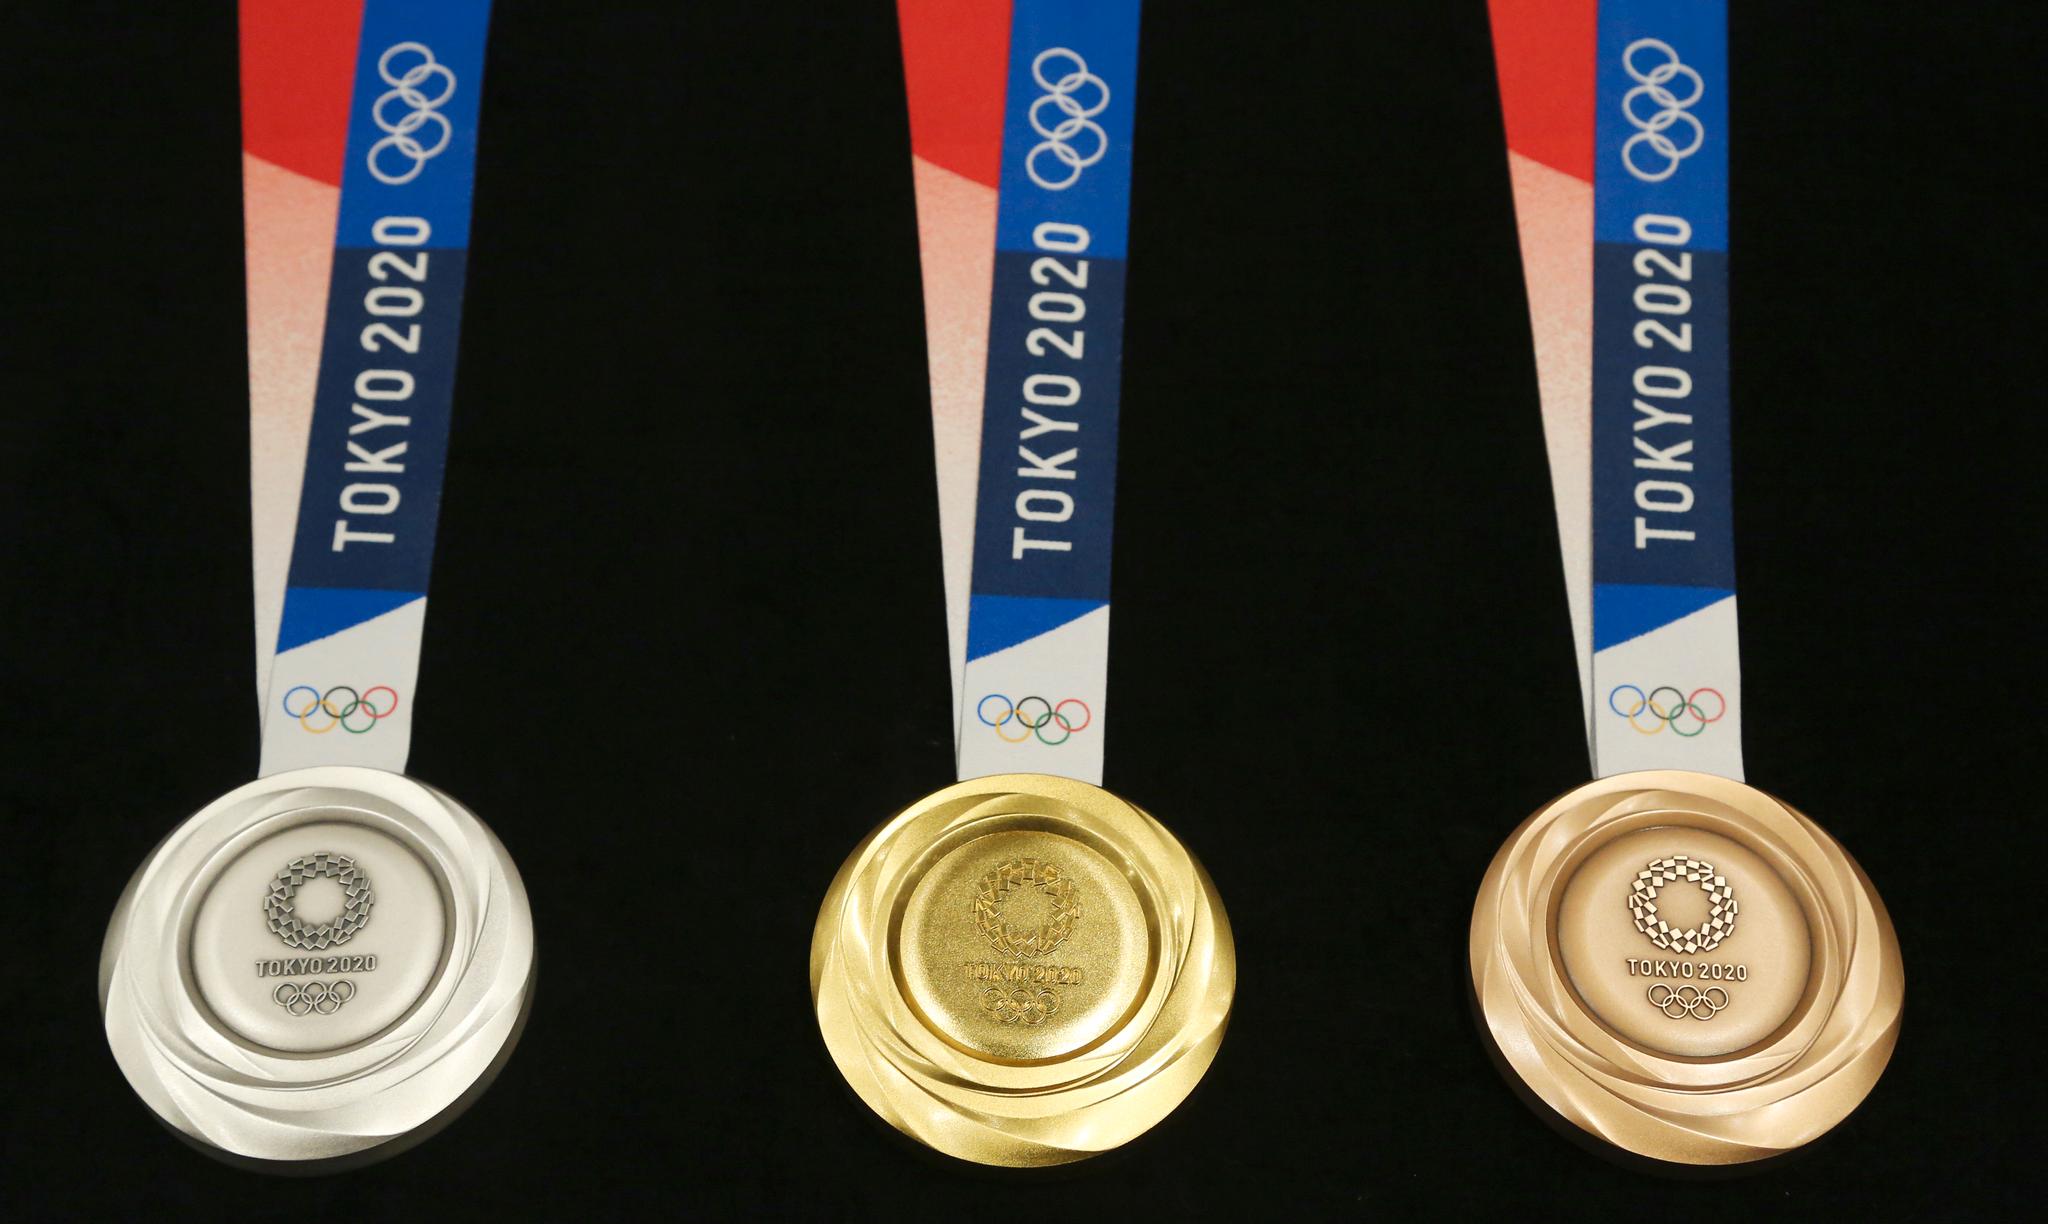 Slik ser de ut, de medaljene som regnes som de største å oppnå. Gull, sølv og bronse.